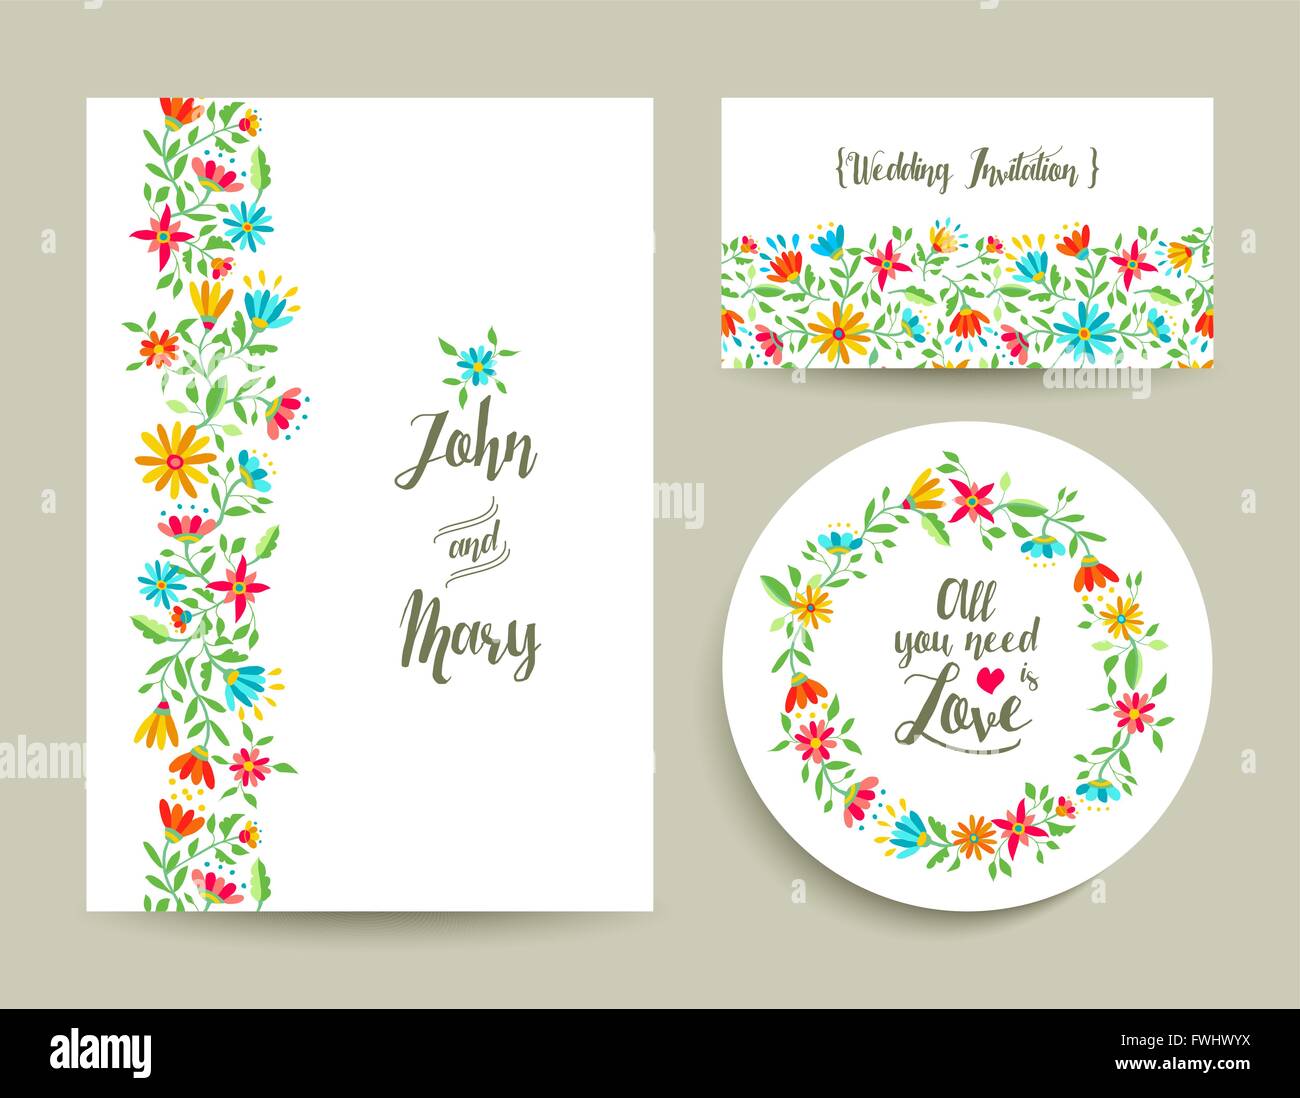 Belle carte invitation mariage floral modèle avec motifs floraux colorés moderne idéal pour la fête du printemps. Vecteur EPS10 Illustration de Vecteur